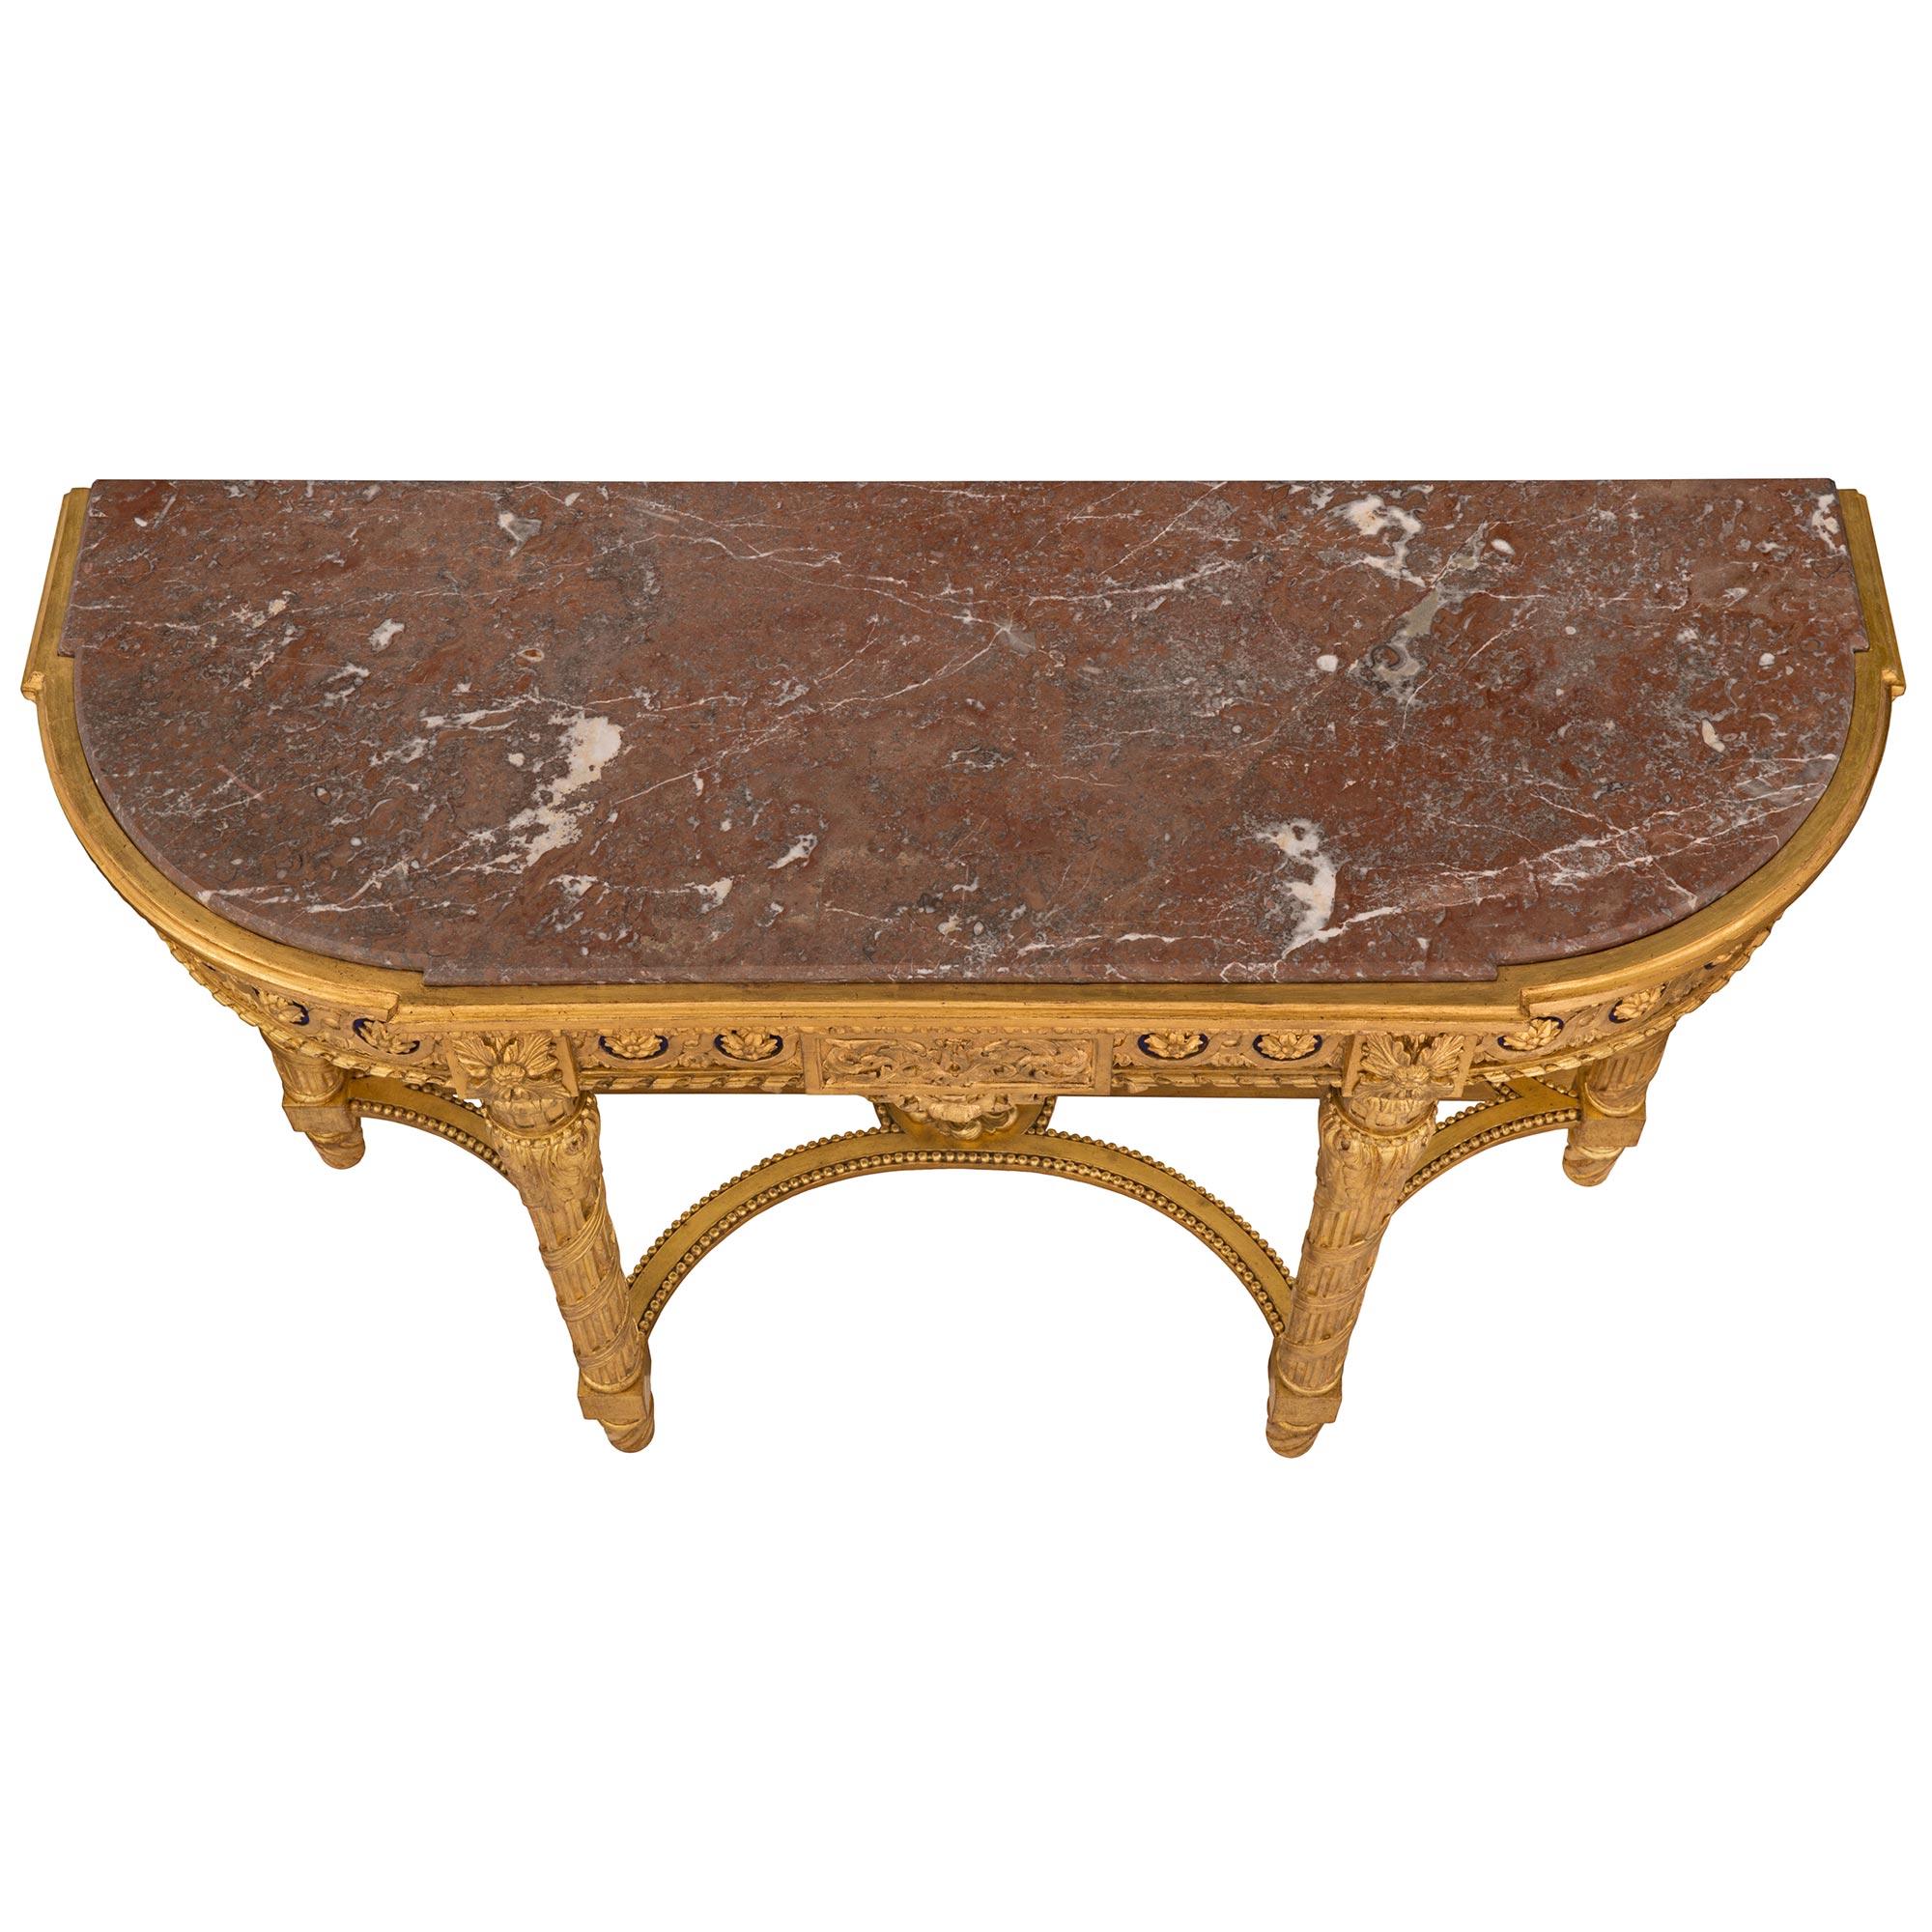 Magnifique et unique console en bois doré et marbre avec miroir, d'époque Louis XVI et Belle Époque. La console est surélevée par d'élégants pieds cannelés en spirale sous de saisissants pieds cannelés circulaires légèrement effilés avec un